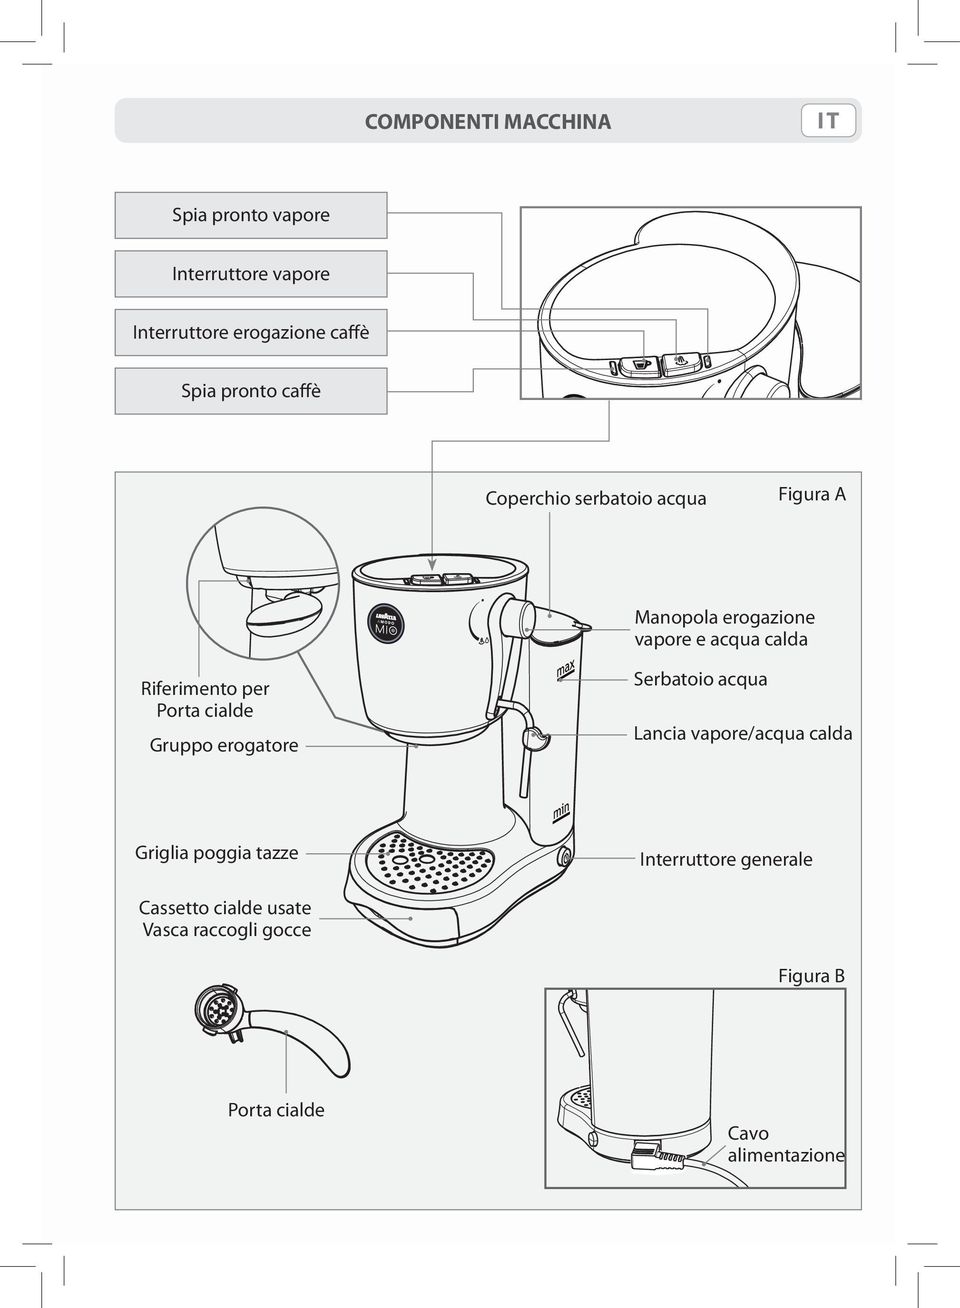 Riferimento per Porta cialde Gruppo erogatore Serbatoio acqua Lancia vapore/acqua calda Griglia